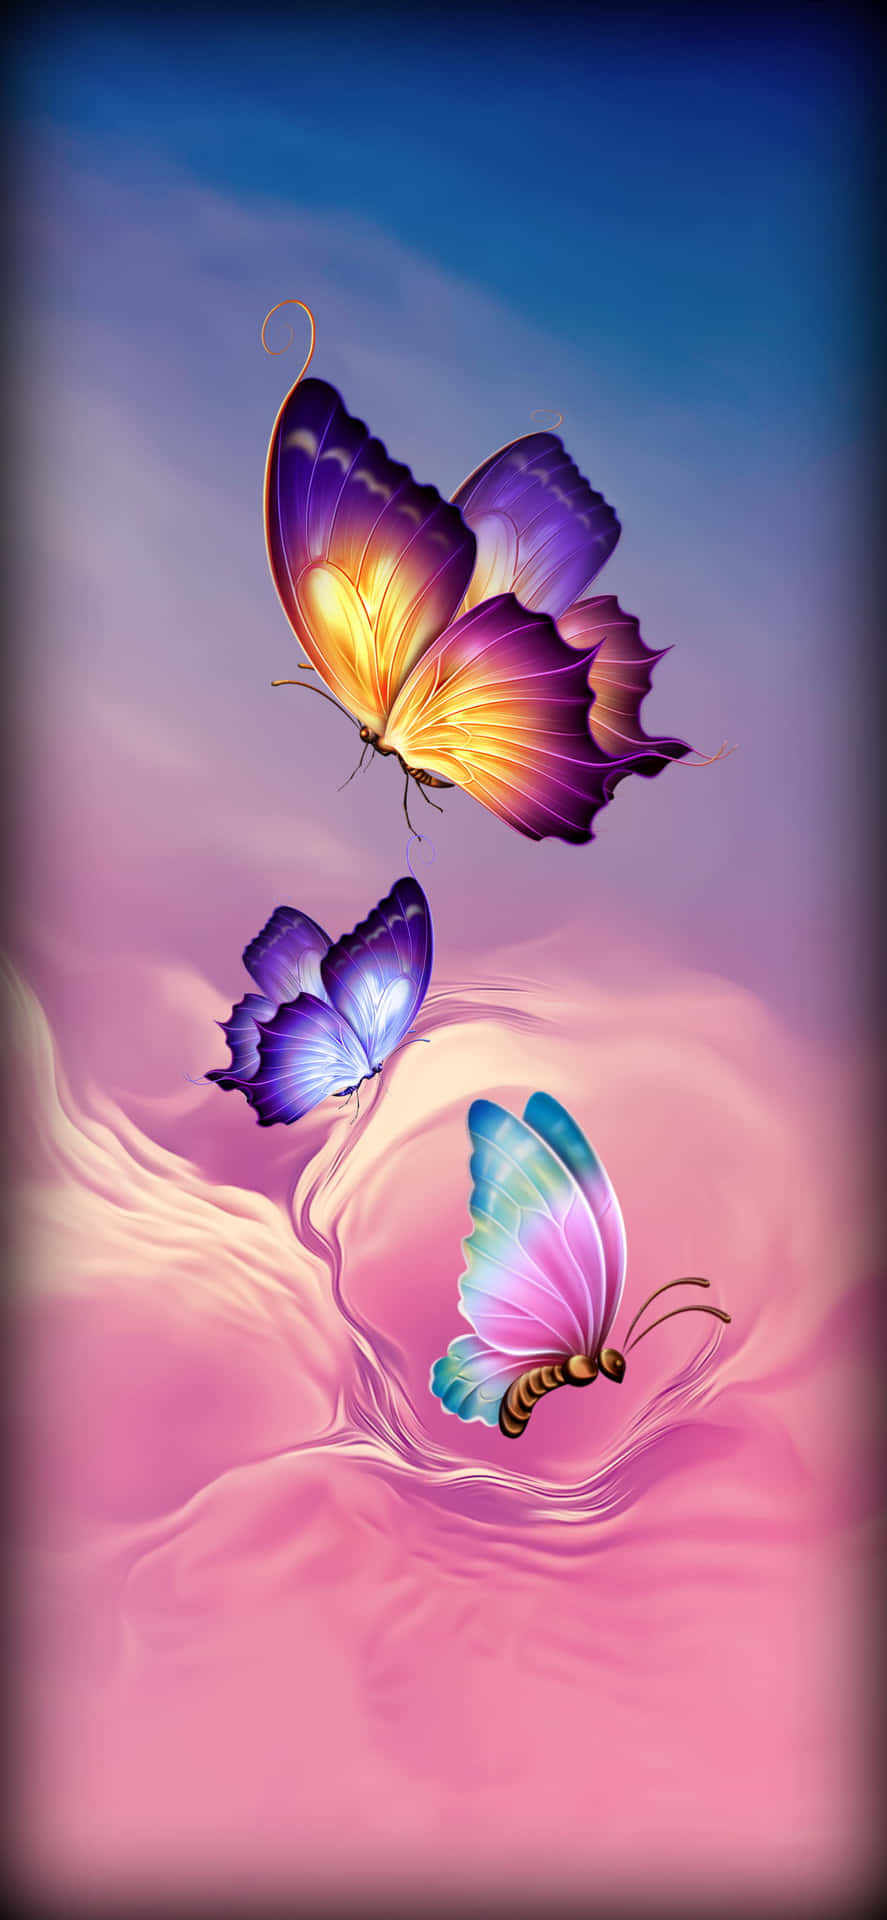 Einbild Von Schmetterlingen, Die In Der Luft Fliegen